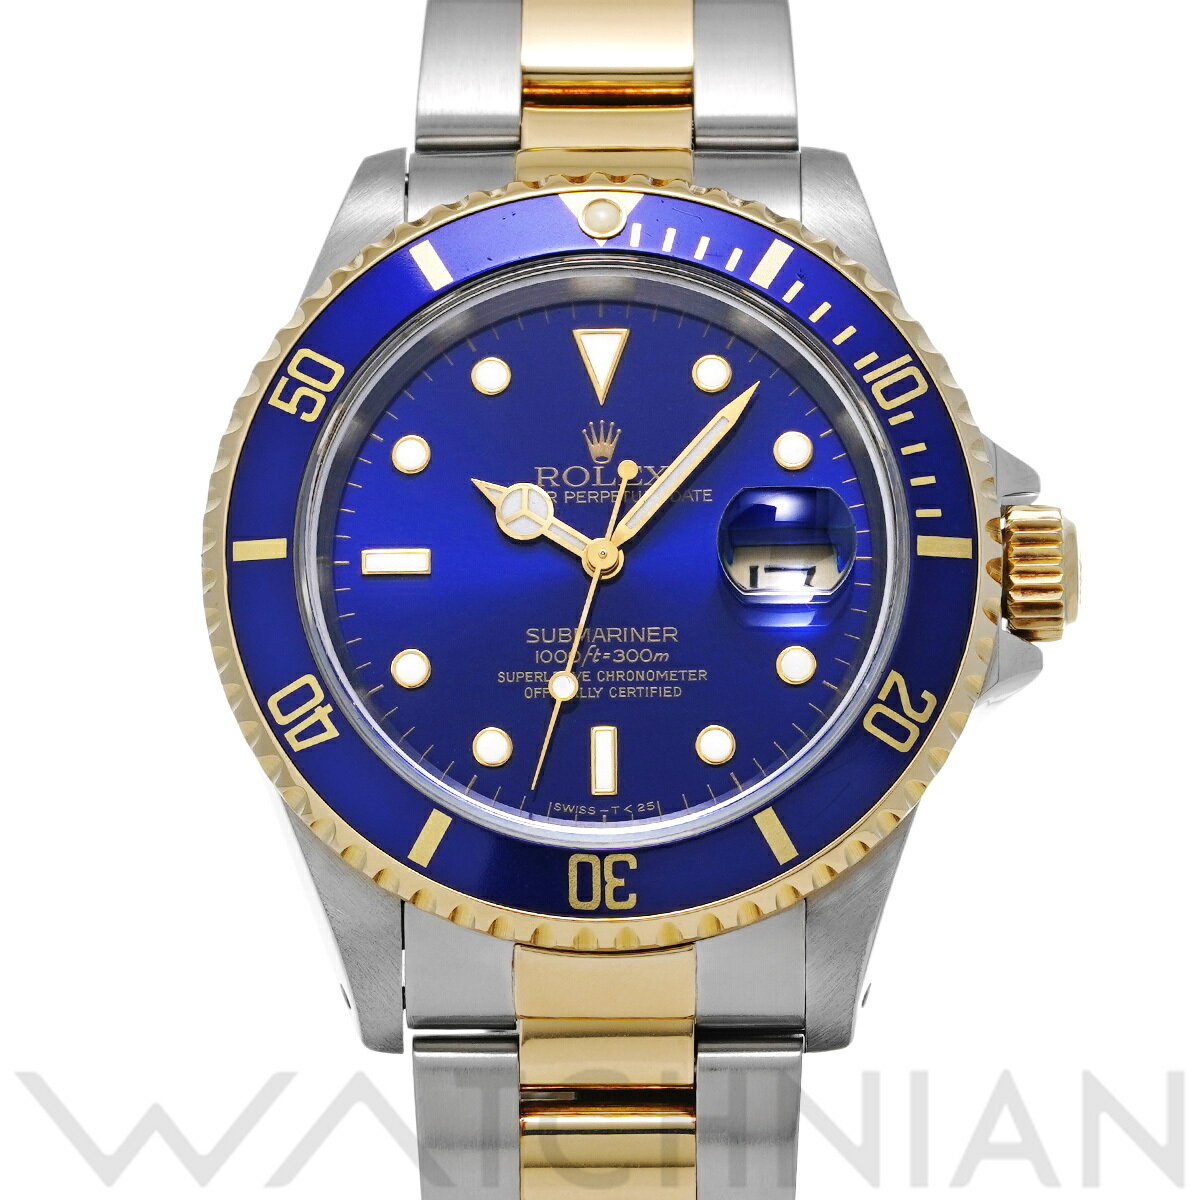 【4種選べるクーポン】【ローン60回払い無金利】【中古】 ロレックス ROLEX サブマリーナ デイト 16613 T番(1996年頃製造) ブルー メンズ 腕時計 ロレックス 時計 高級腕時計 ブランド